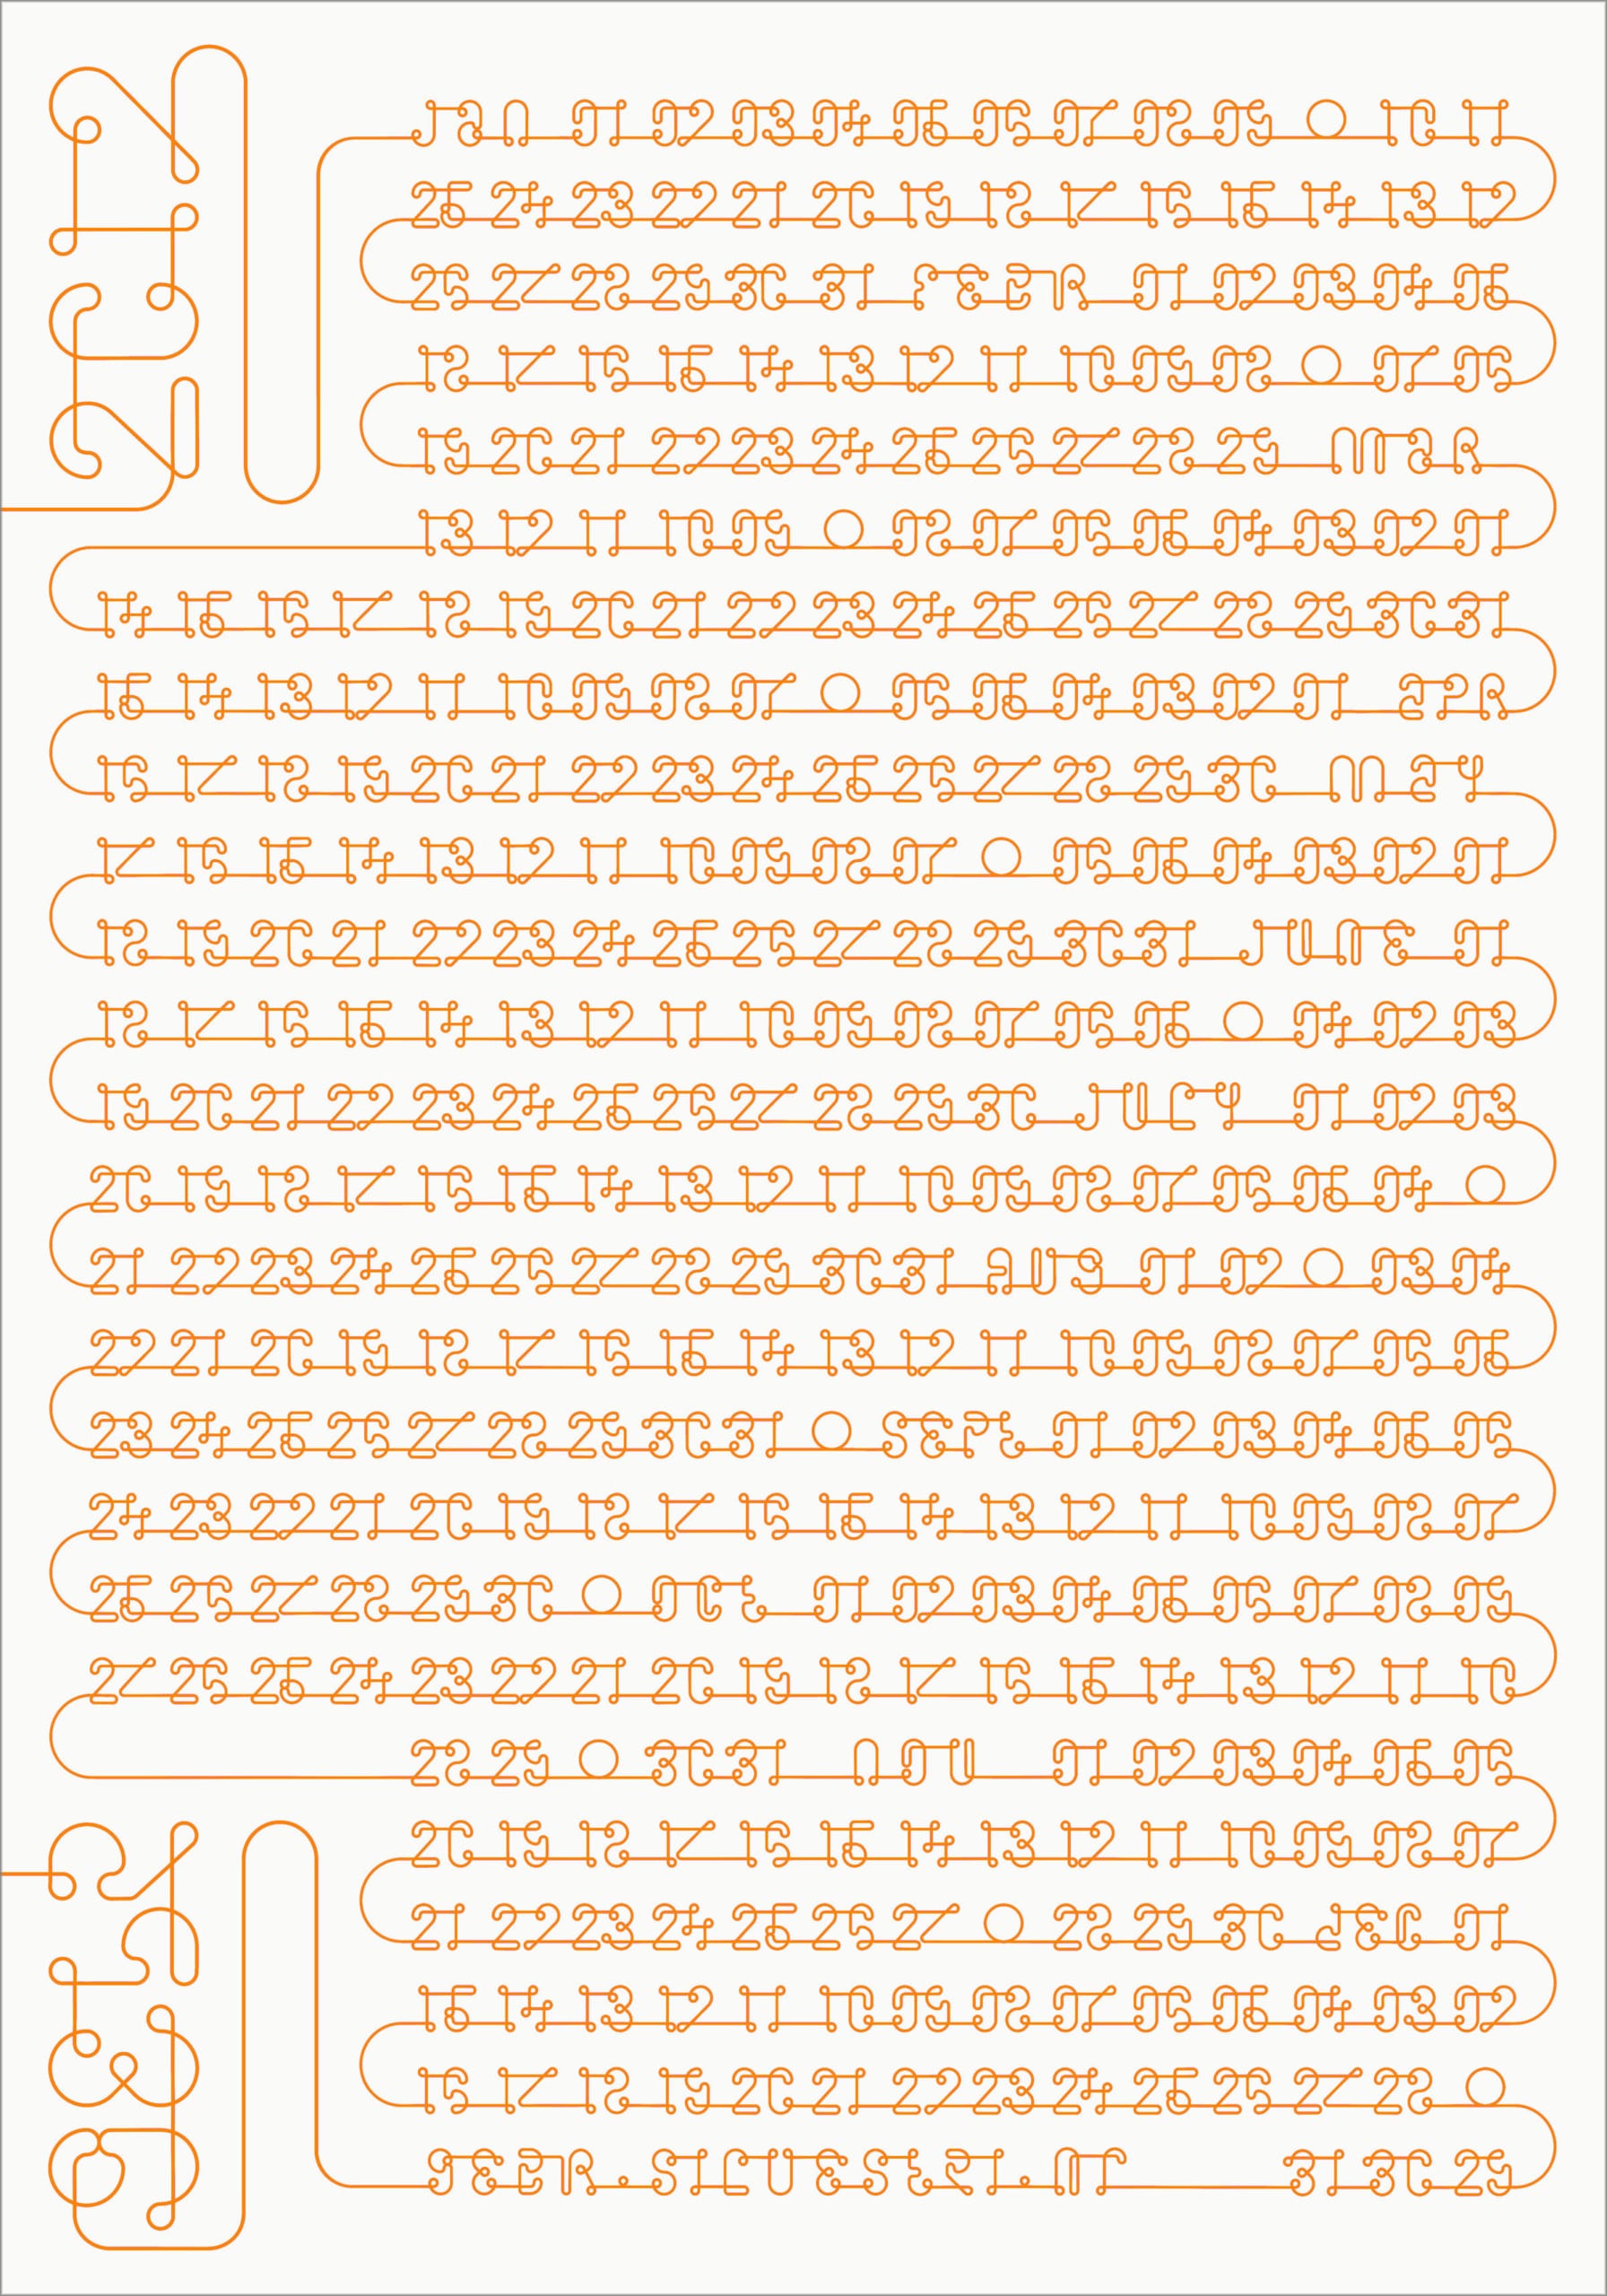 Gebr. Silvestri Typeface – GS_2012